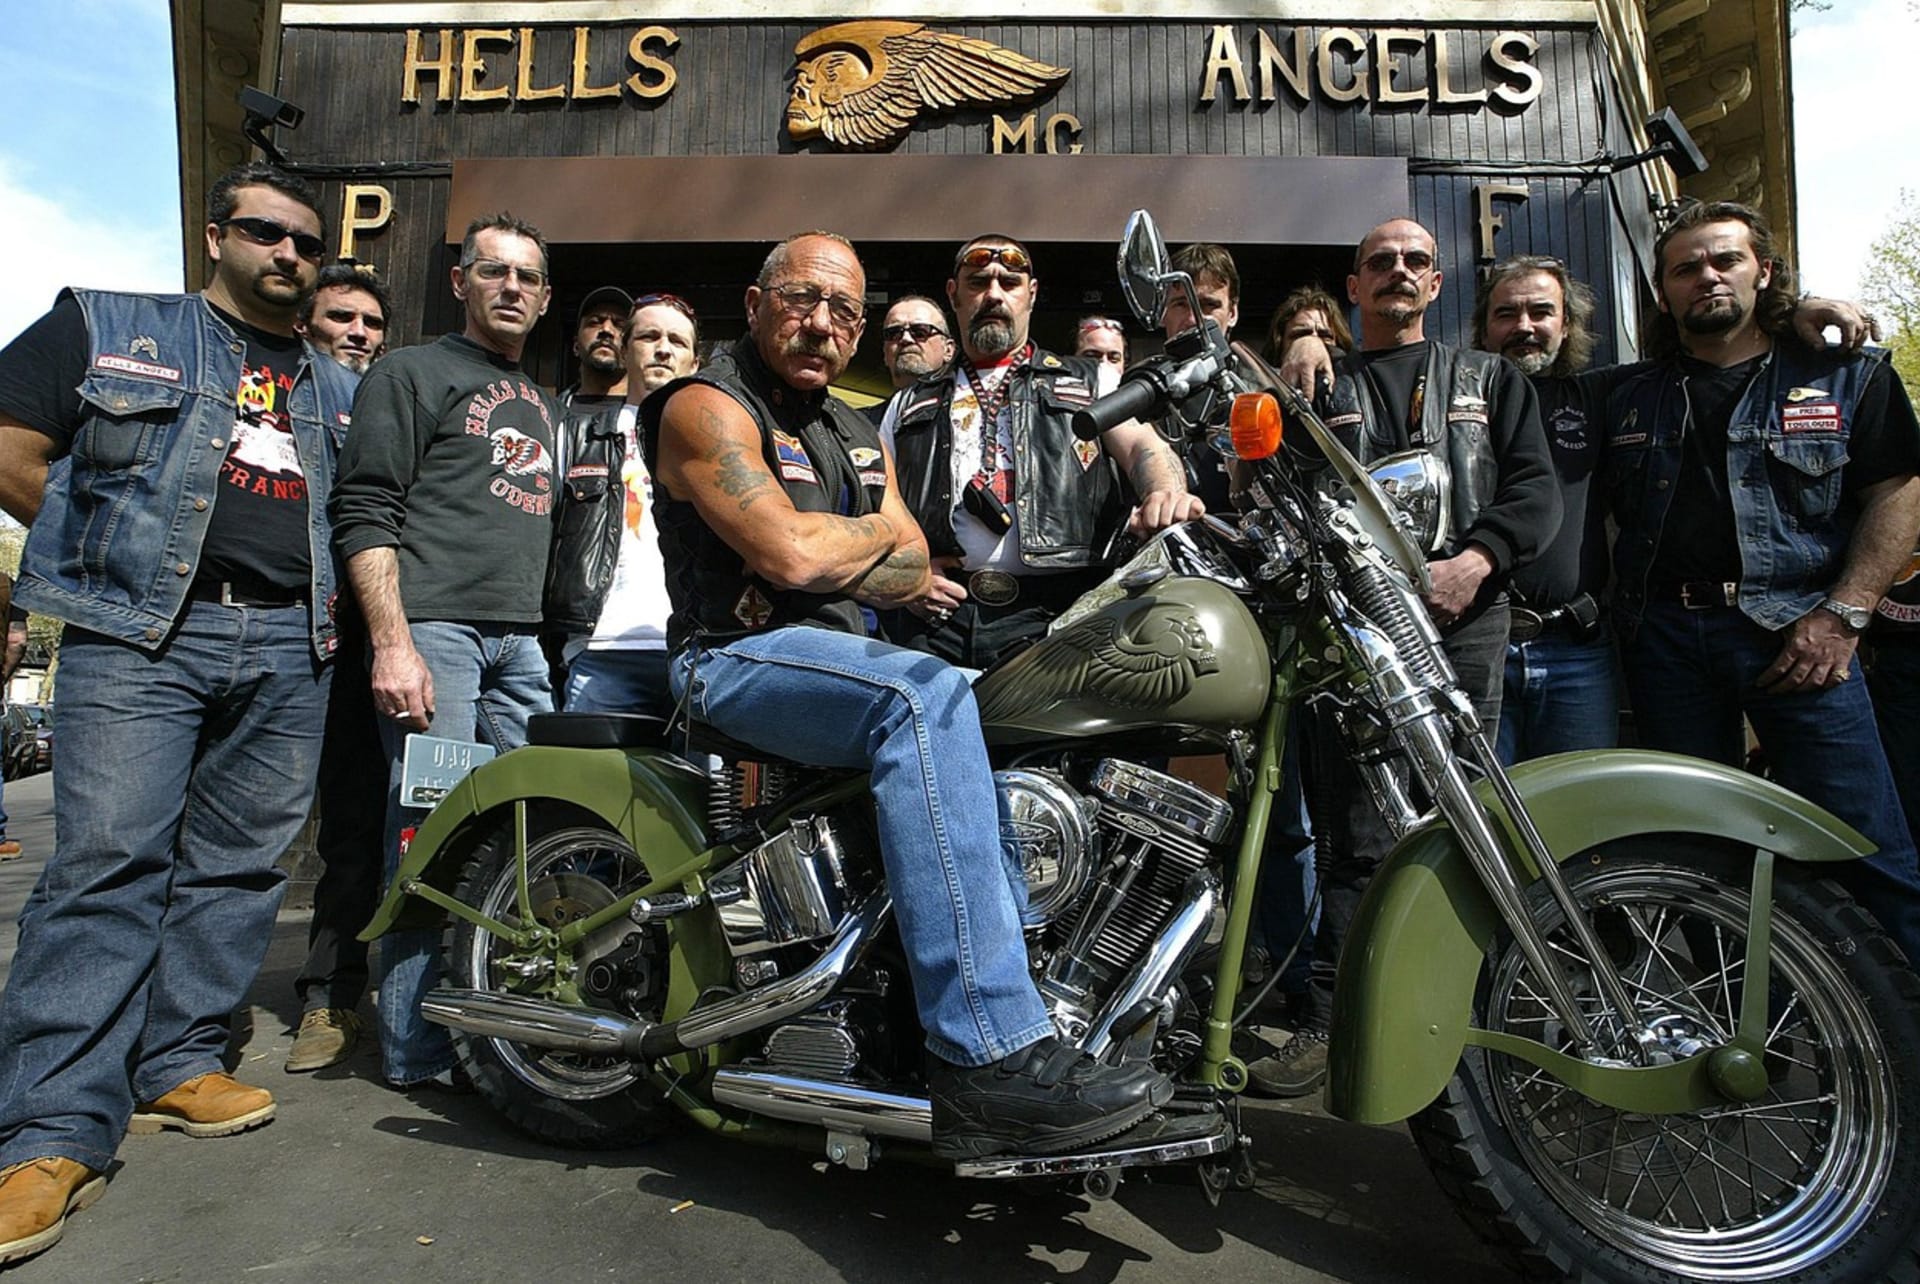 Spoluzakladatel motorkářského klubu Hell’s Angels Sonny Barger na návštěvě Paříže